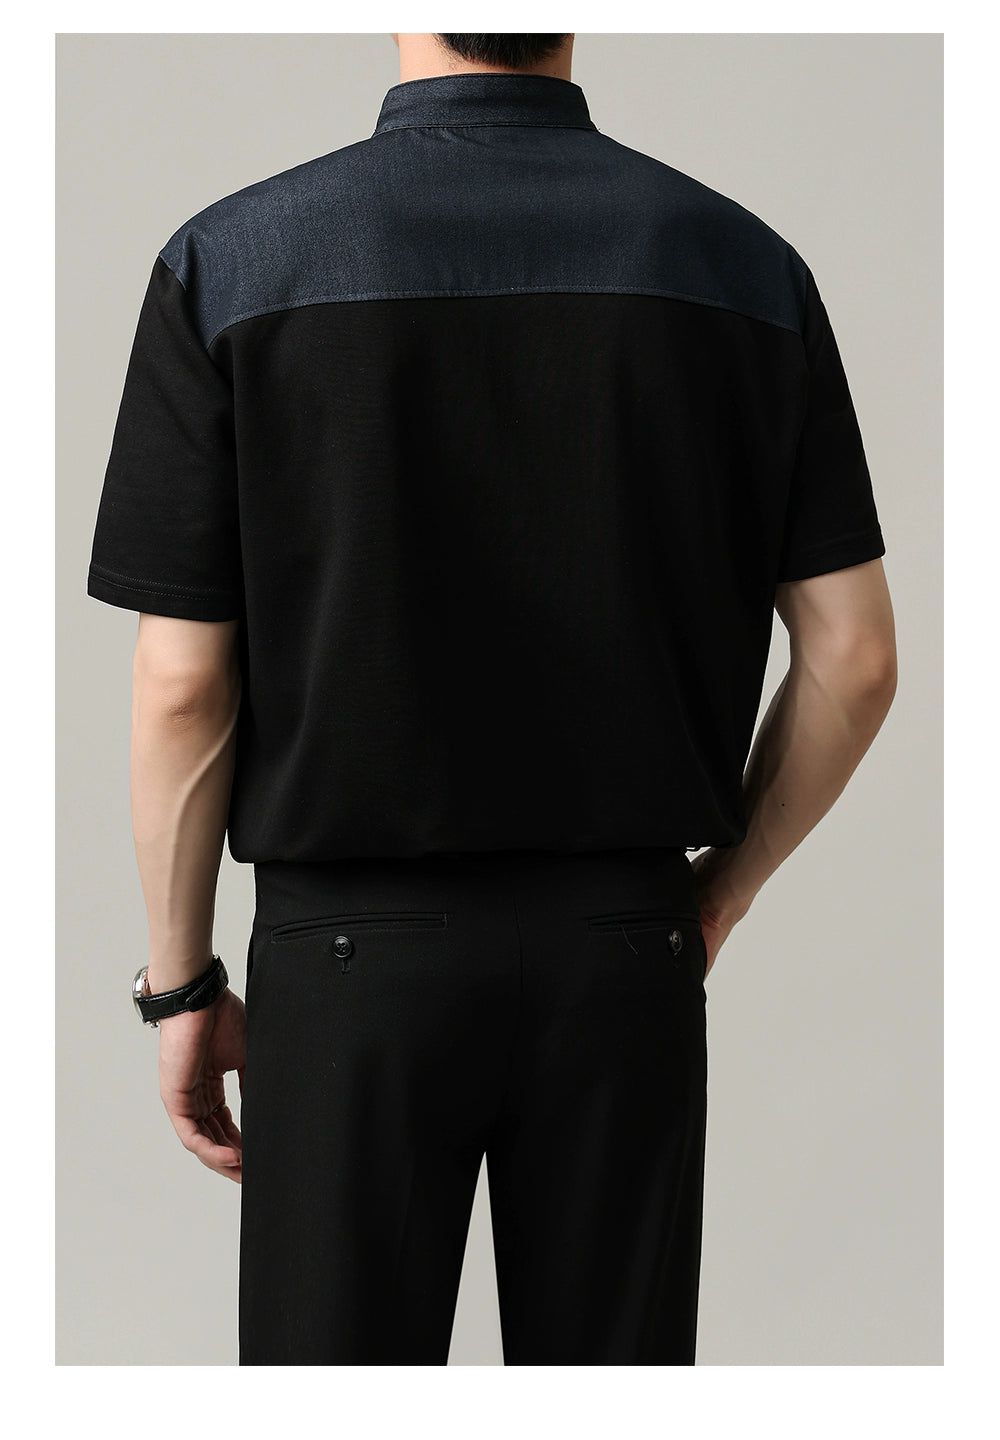 Zhou Outline Half Button T-Shirt-korean-fashion-T-Shirt-Zhou's Closet-OH Garments